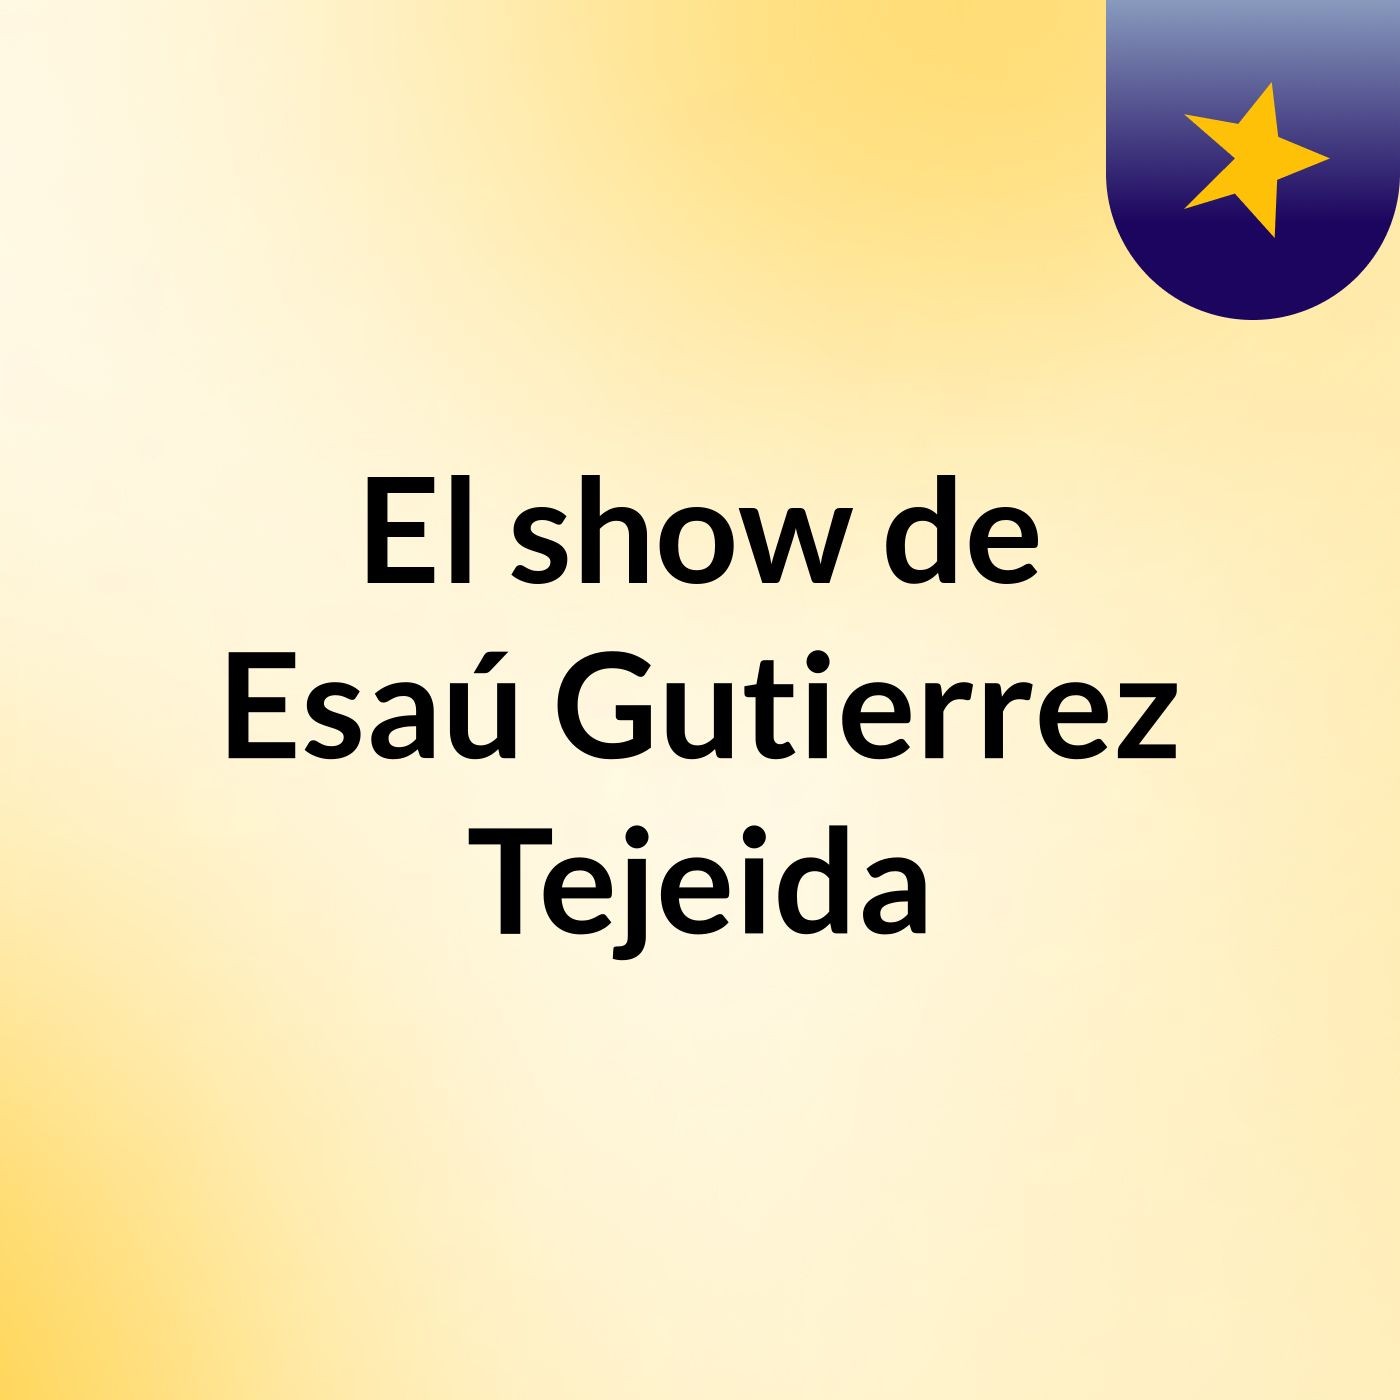 El show de Esaú Gutierrez Tejeida